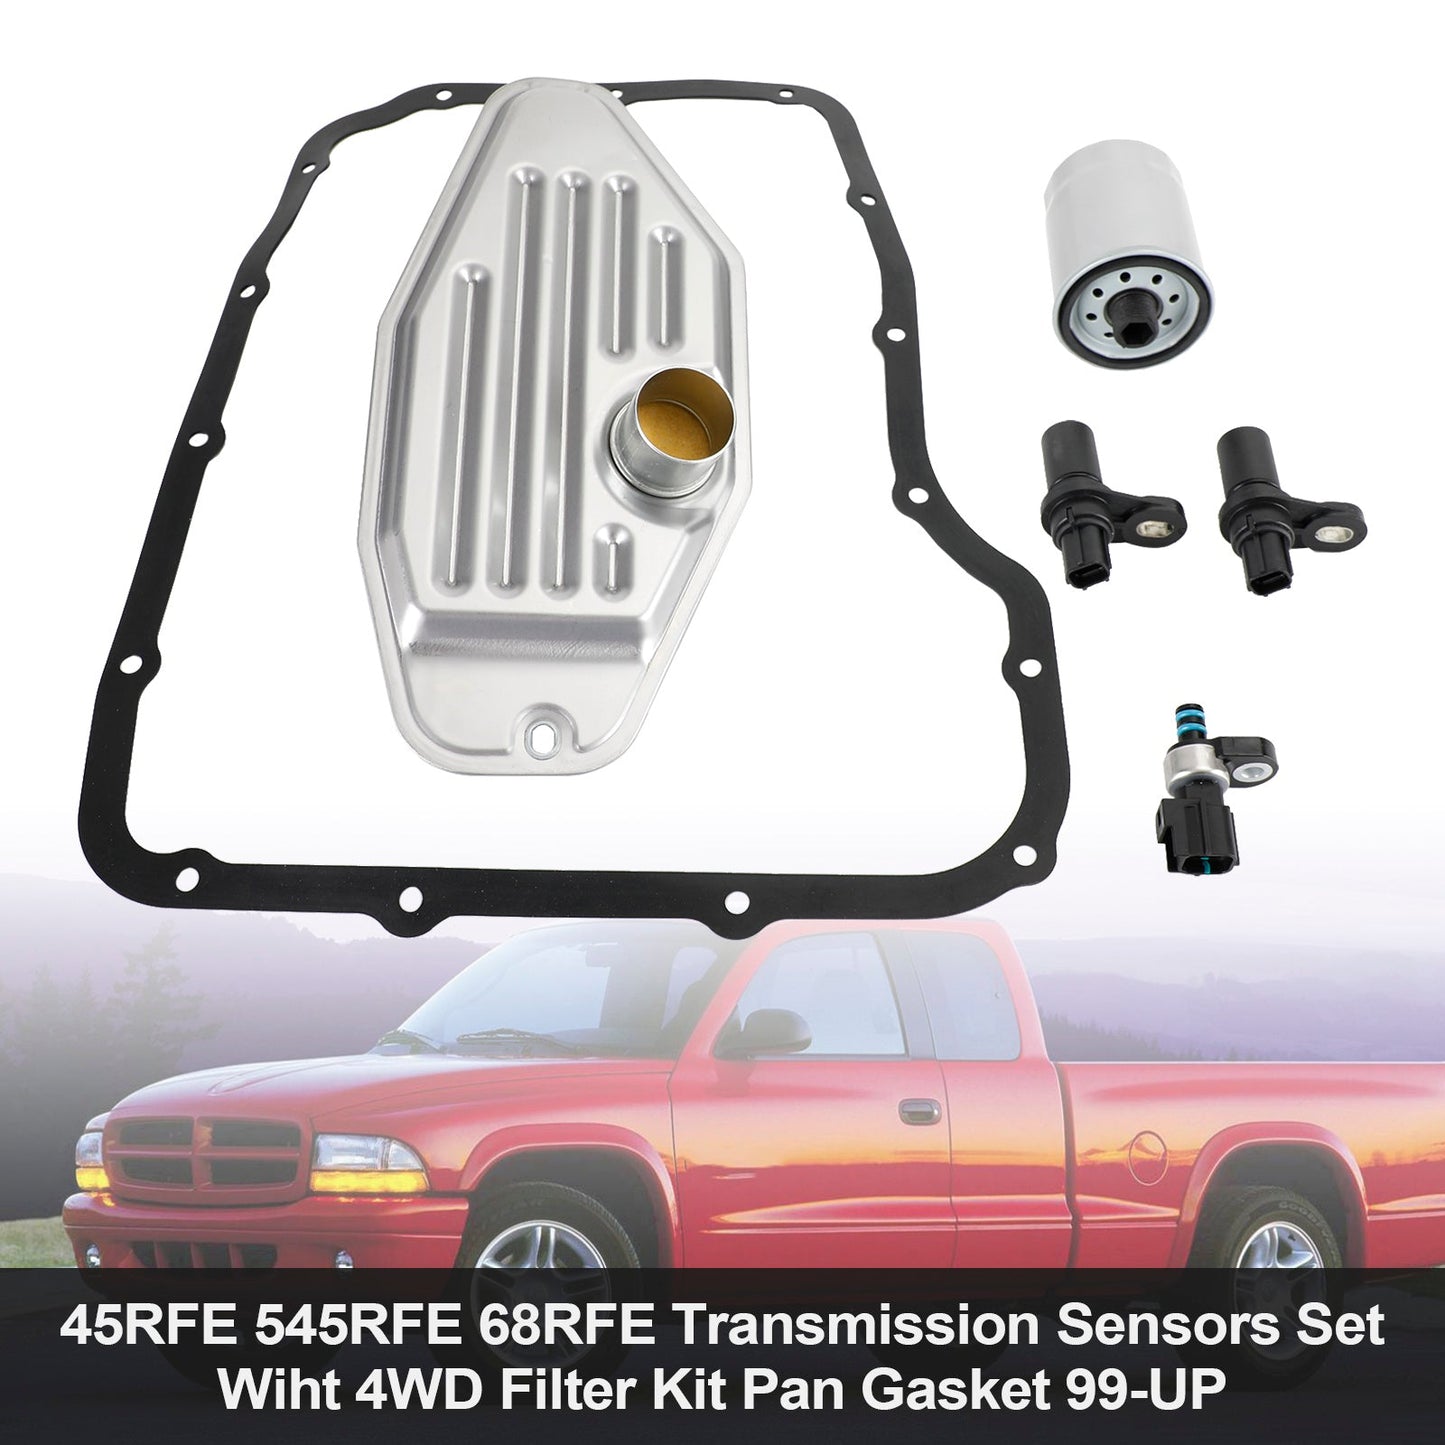 2000-2011 Dodge Pickup/Dakota 45RFE 545RFE 68RFE Transmission Sensors Set With 4WD Filter Kit Pan Gasket